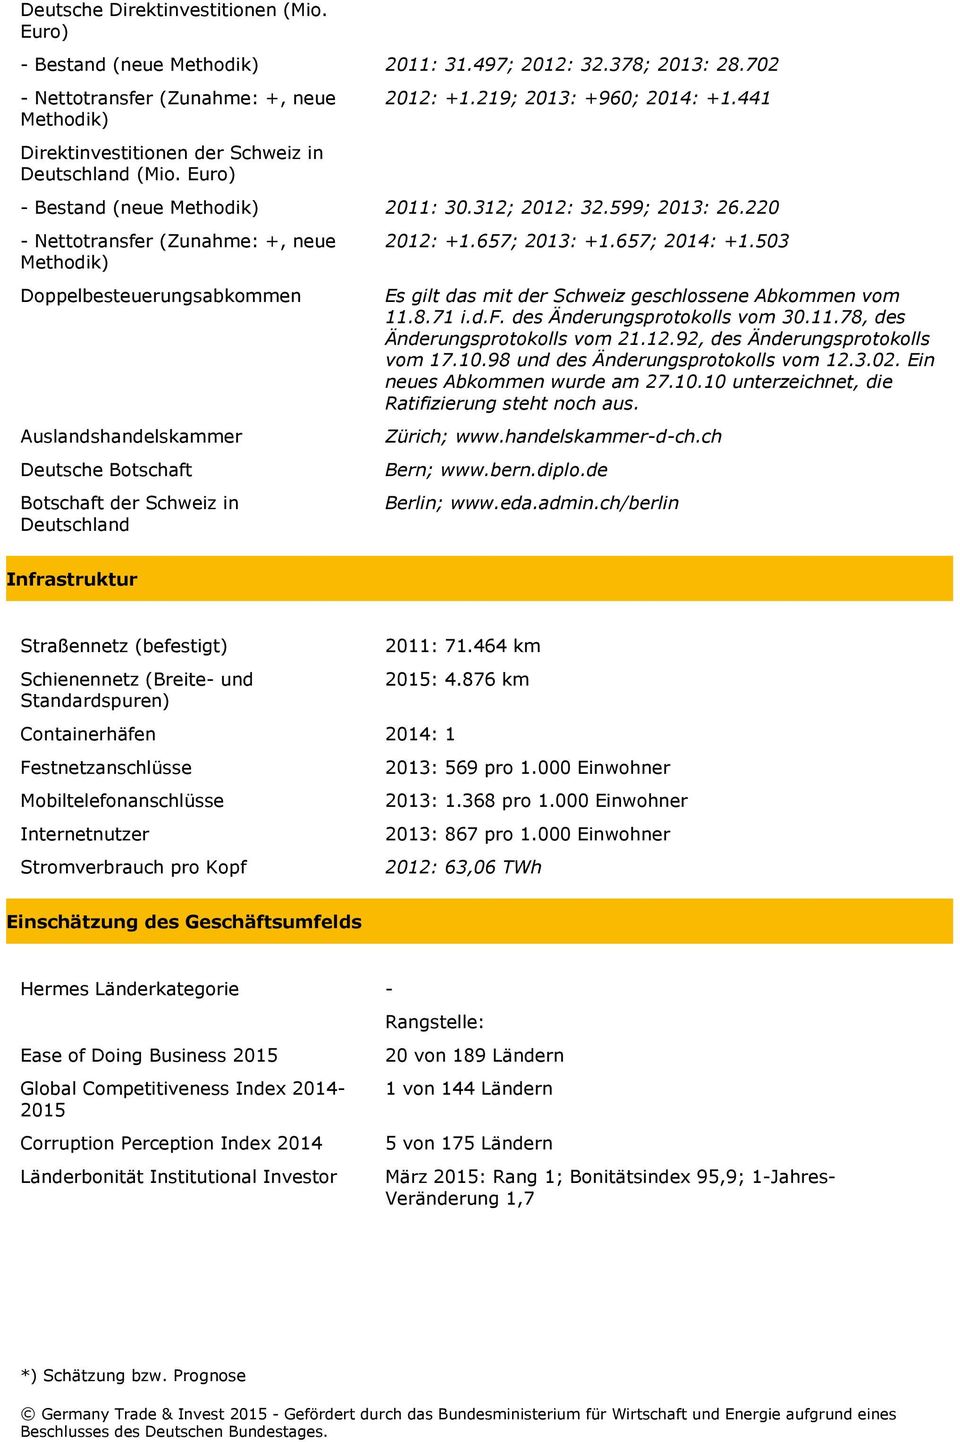 220 - Nettotransfer (Zunahme: +, neue Methodik) Doppelbesteuerungsabkommen Auslandshandelskammer Deutsche Botschaft Botschaft der Schweiz in Deutschland 2012: +1.657; 2013: +1.657; 2014: +1.